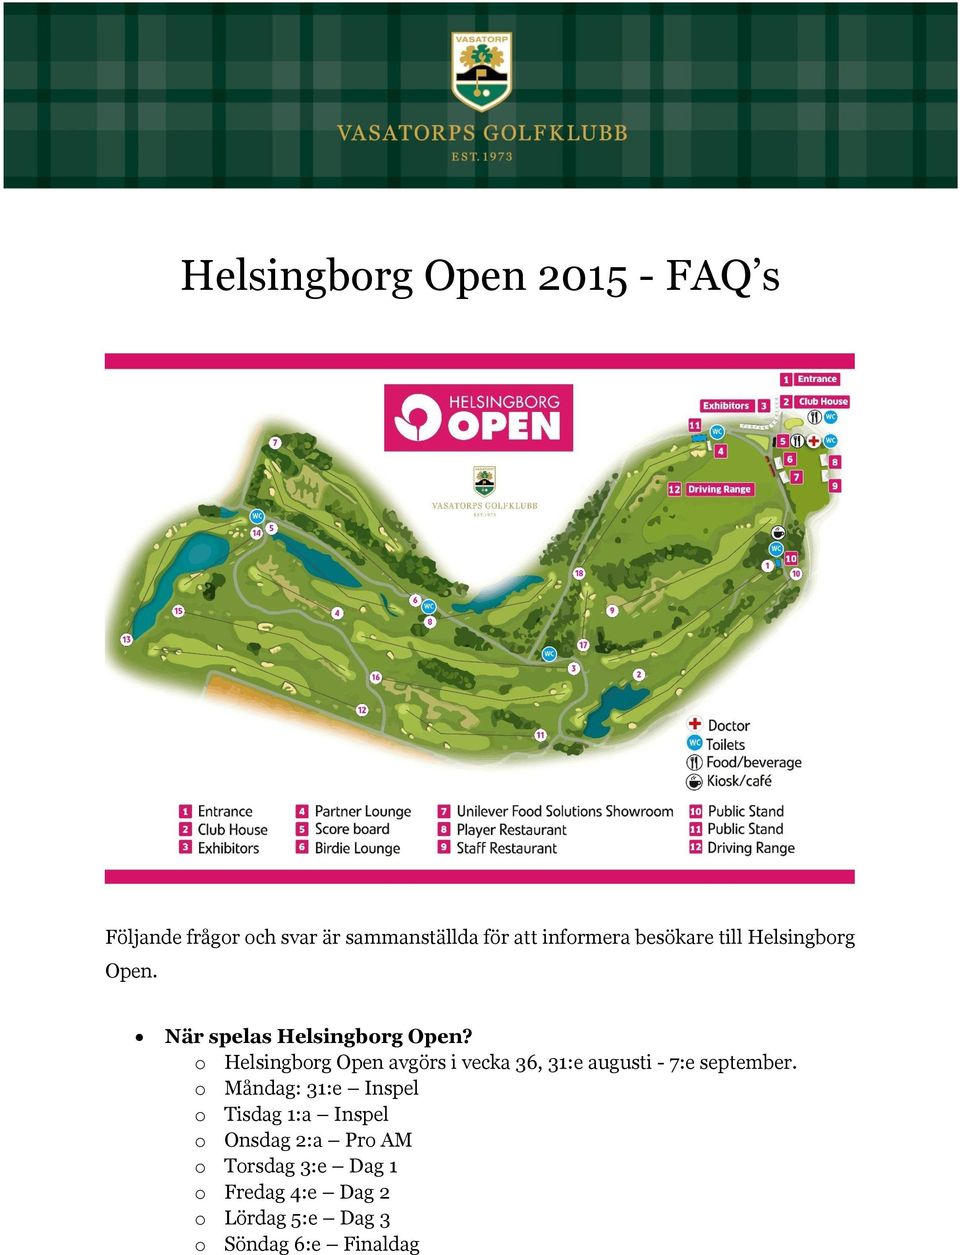 o Helsingborg Open avgörs i vecka 36, 31:e augusti - 7:e september.